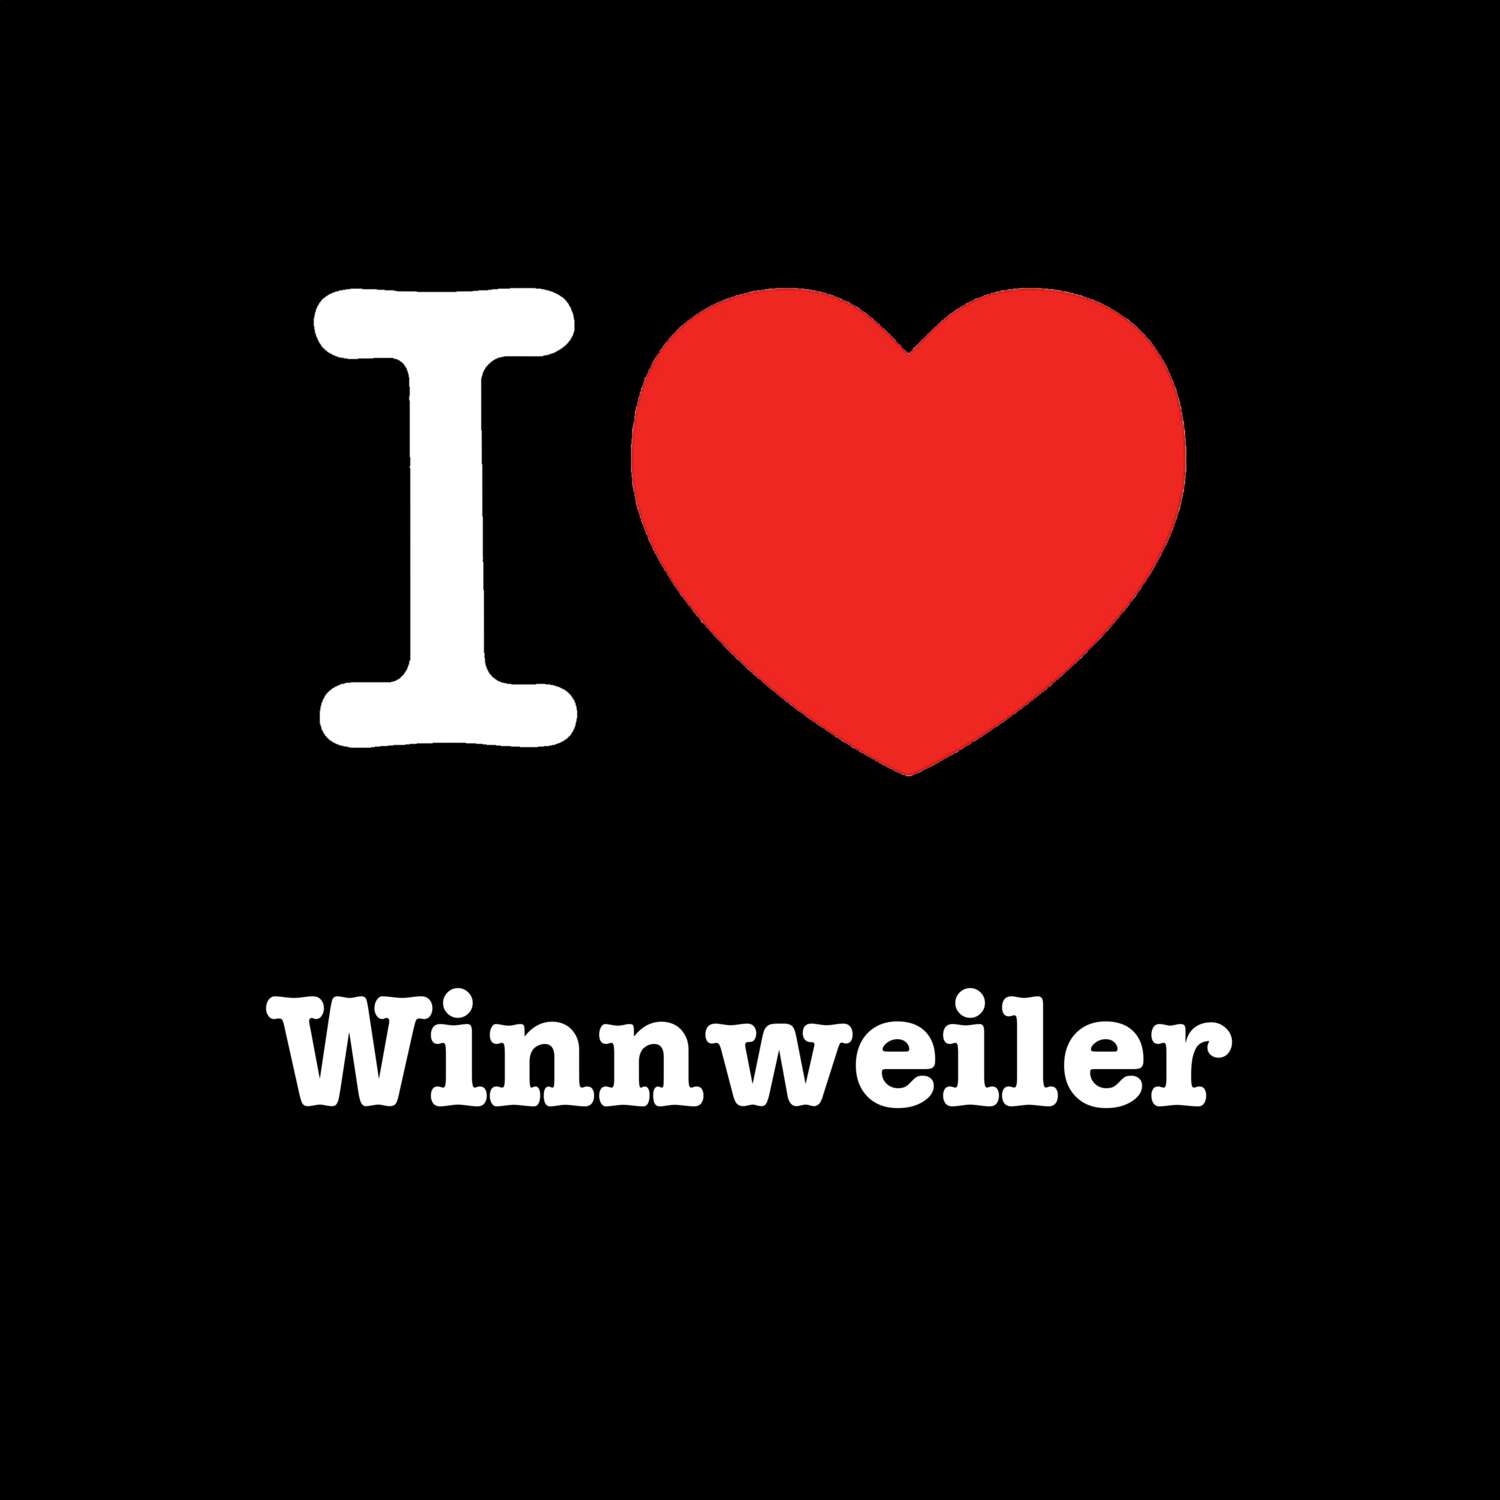 Winnweiler T-Shirt »I love«